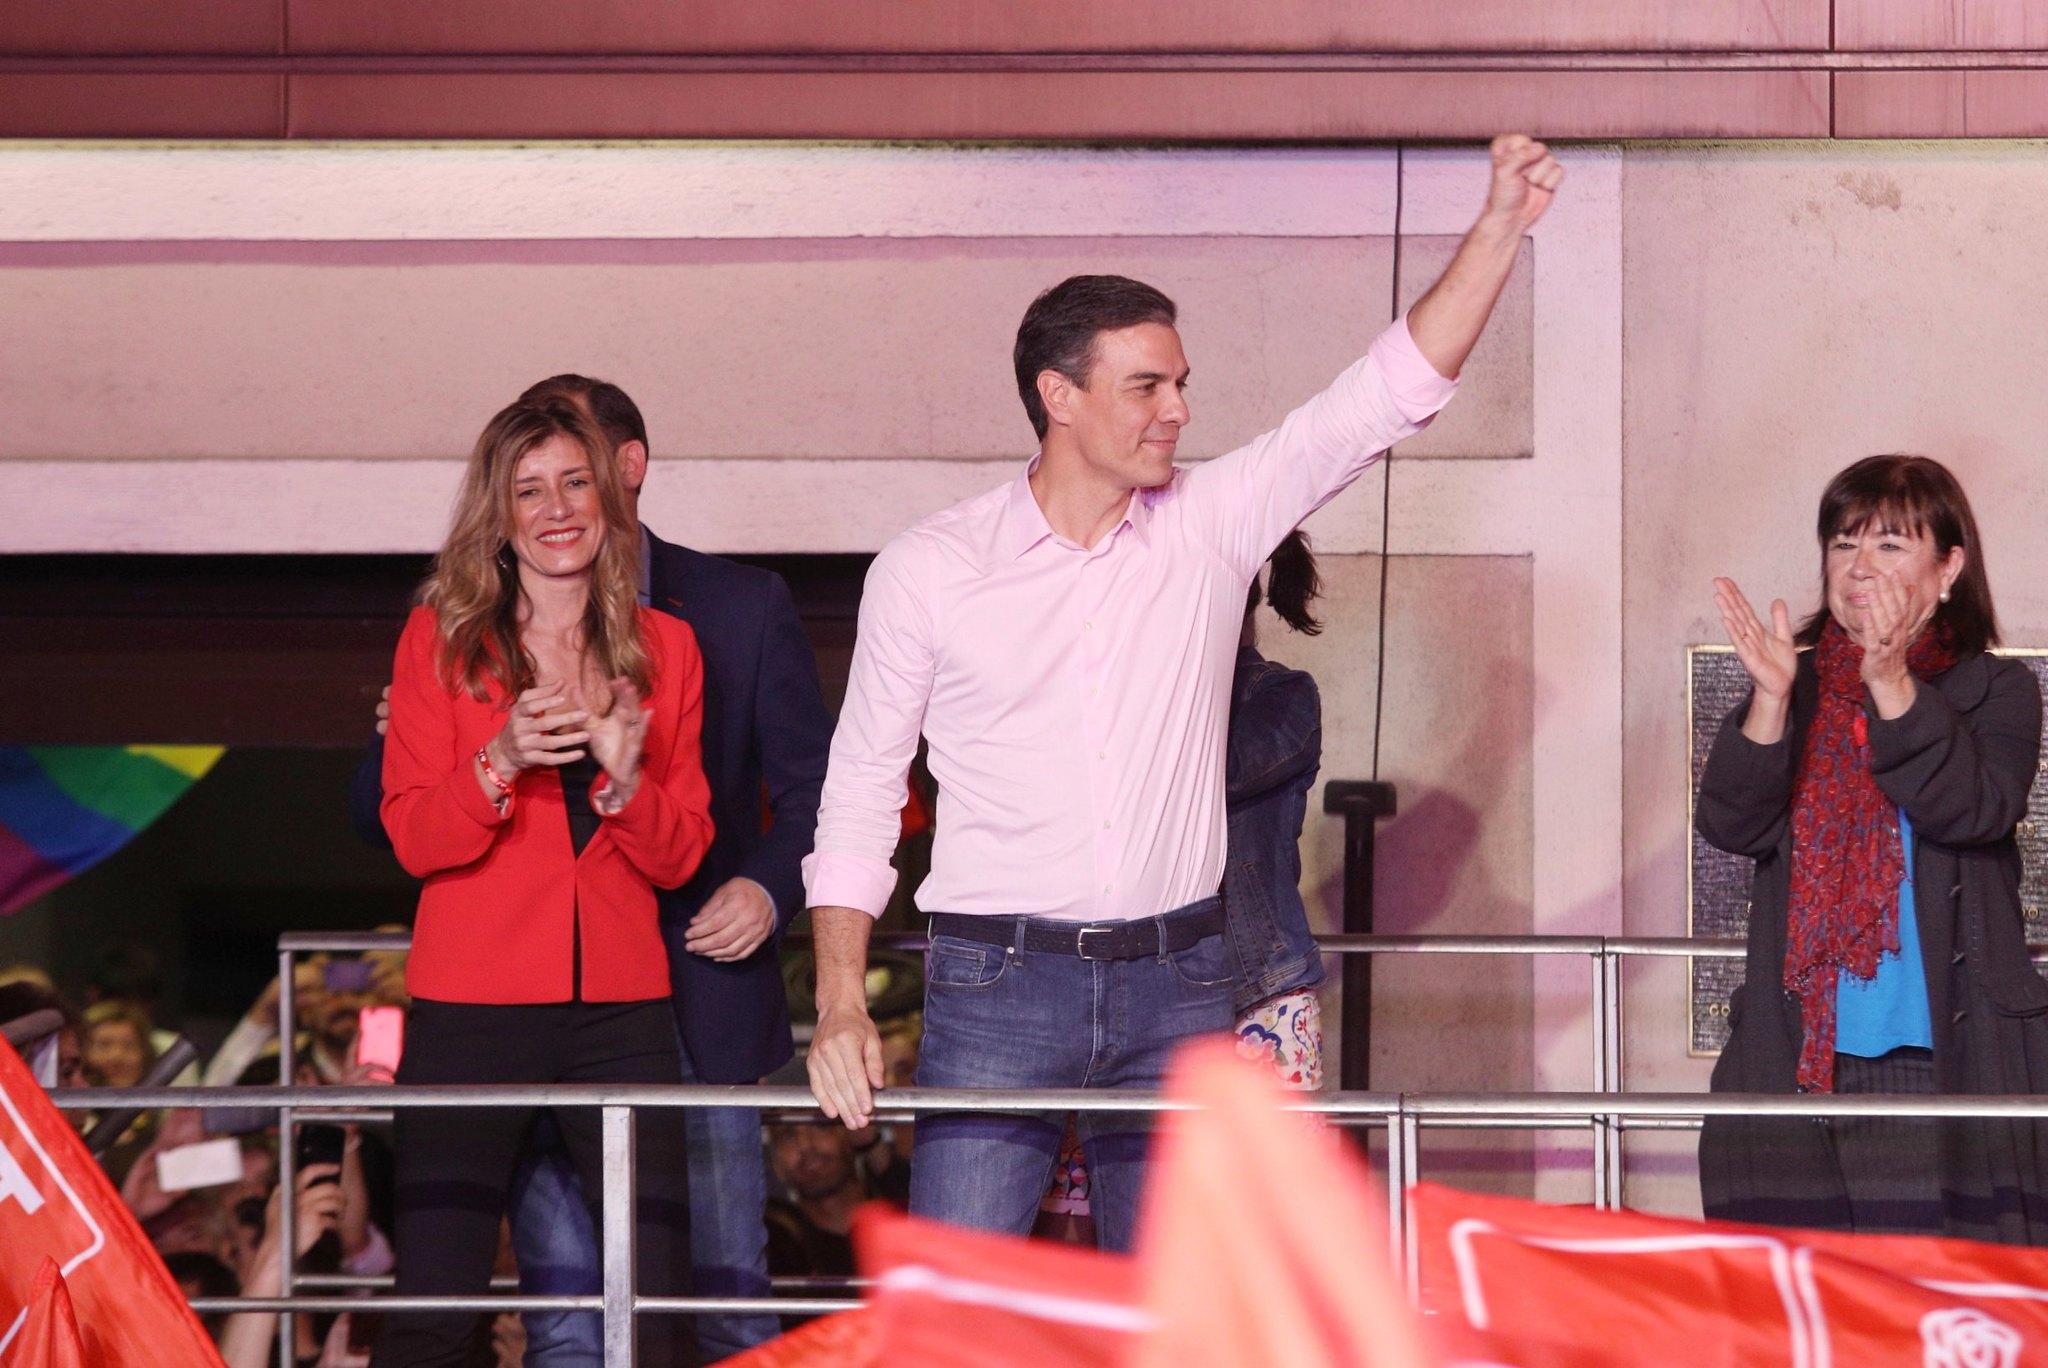 Pedro Sánchez saluda desde el balcón de Ferraz tras ganar las elecciones. FLICKR